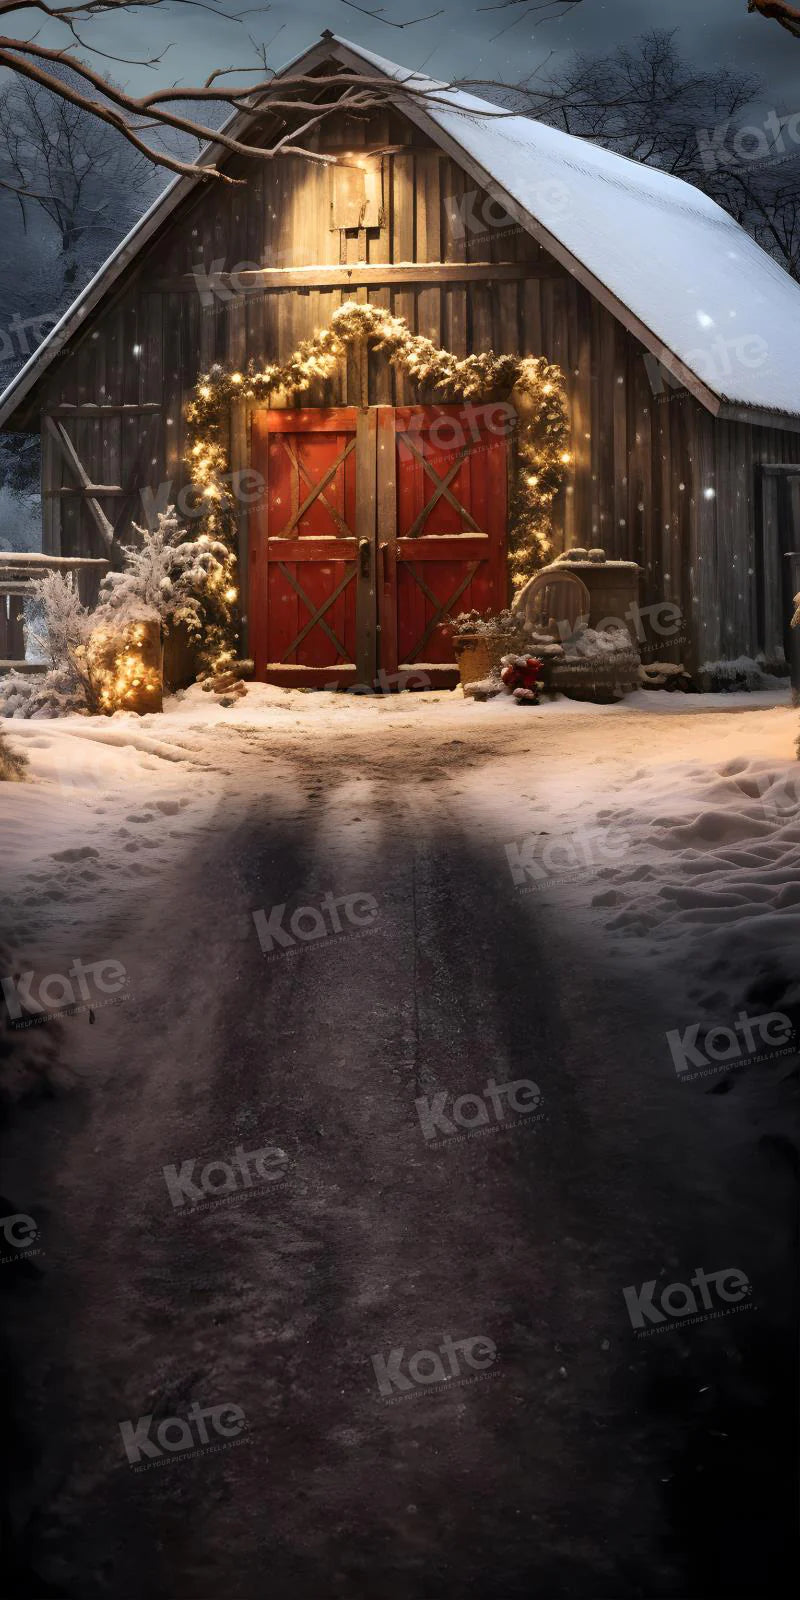 Kate Kombibackdrop Weihnachten Weg zur roten Scheune Nacht Hintergrund für die Fotografie